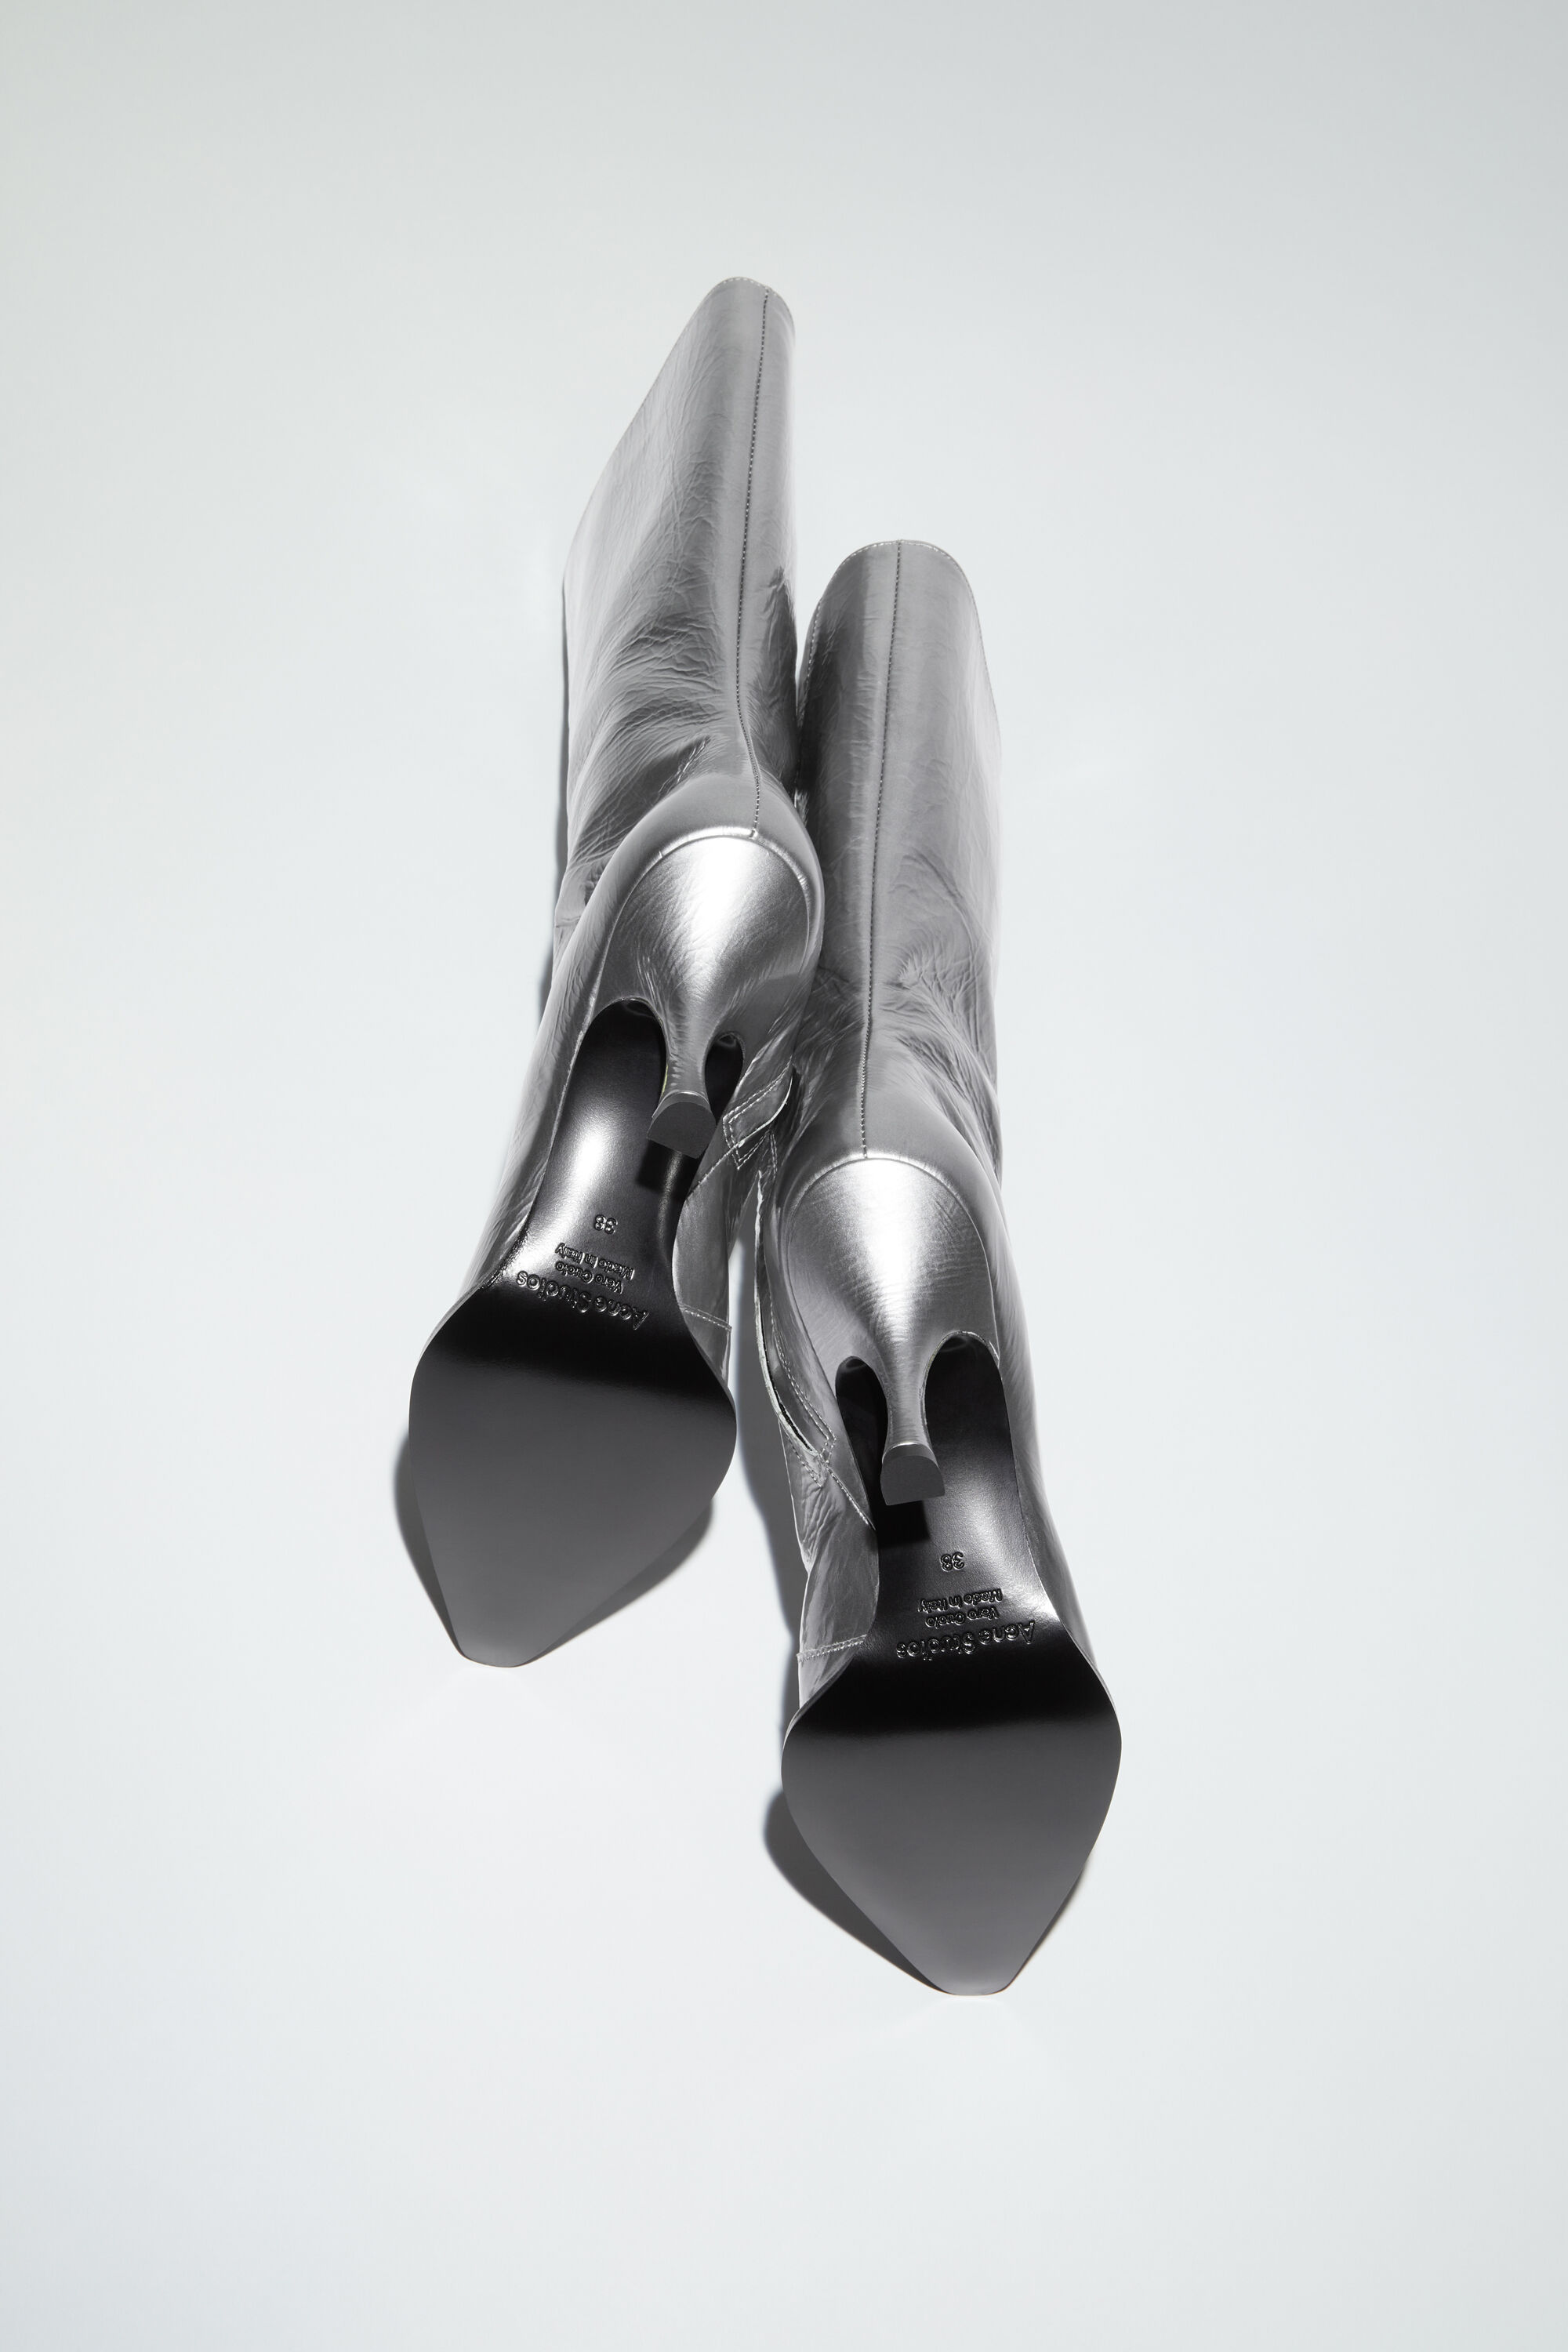 極美品 アクネストゥディオズ Acne Studios ブーツ ショートブーツ サイドゴア スウェードレザー ヒール シューズ 靴 レディース イタリア製 36(23cm相当) ネイビー